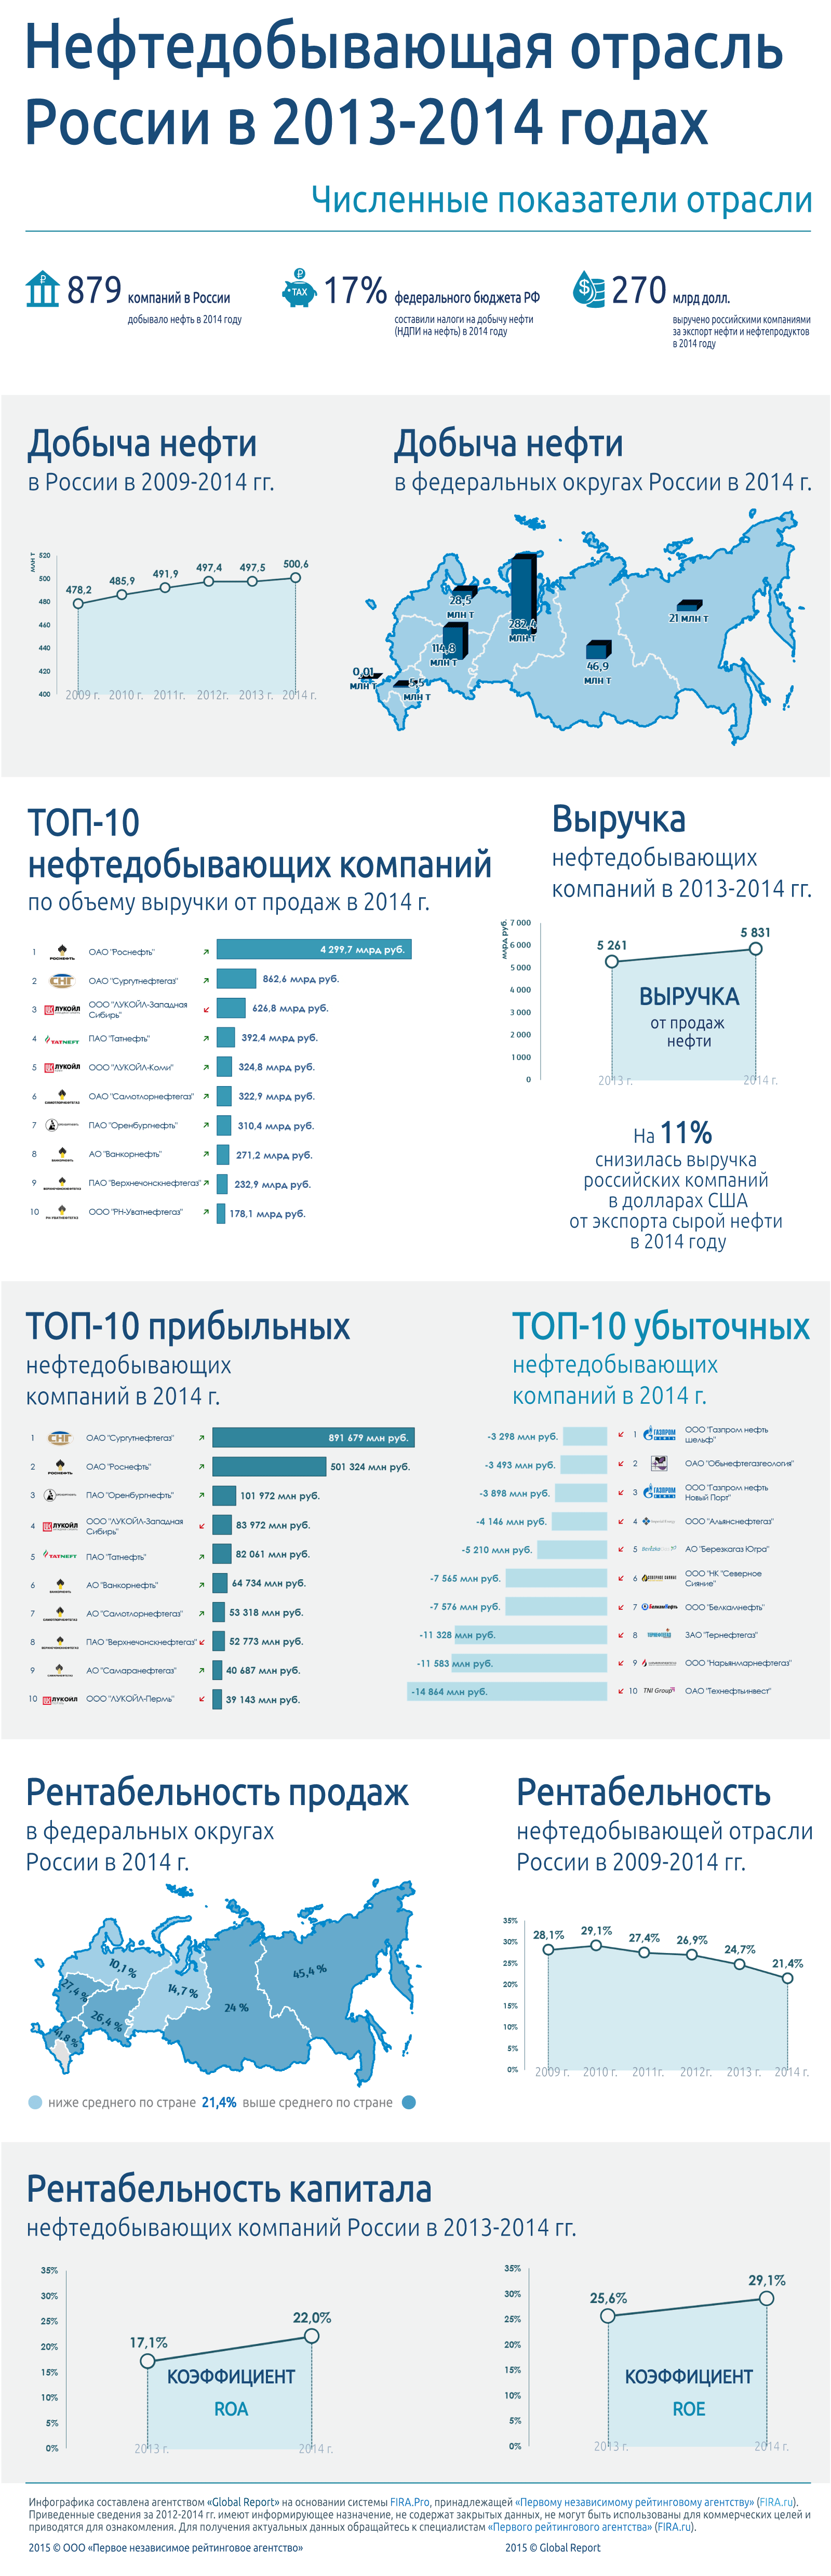 Нефтедобывающая отрасль России в 2013-2014